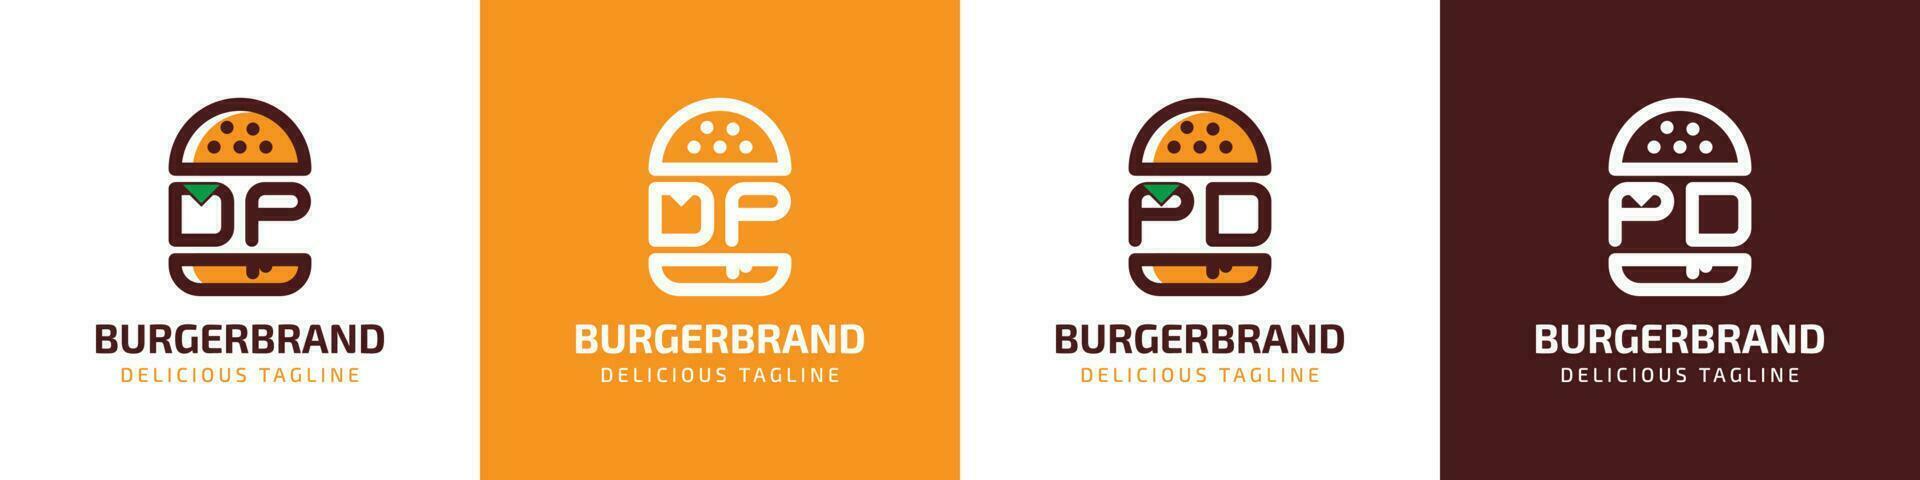 carta dp e pd hamburguer logotipo, adequado para qualquer o negócio relacionado para hamburguer com dp ou pd iniciais. vetor